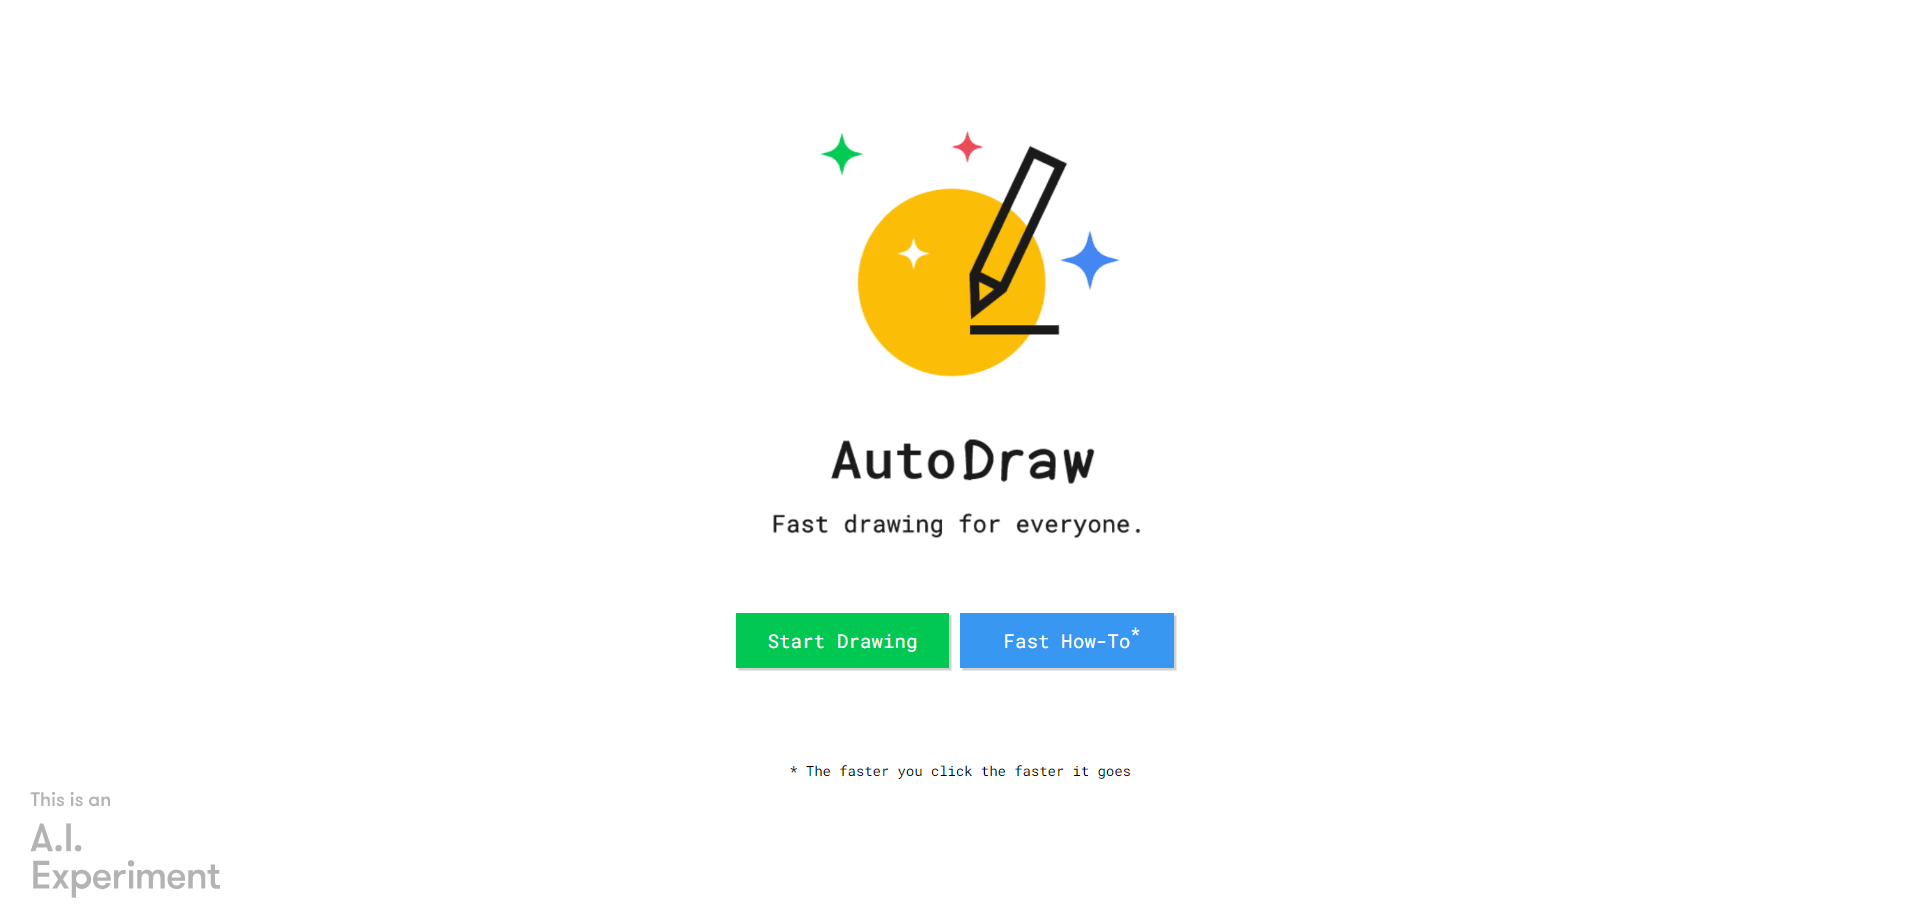 Auto Draw